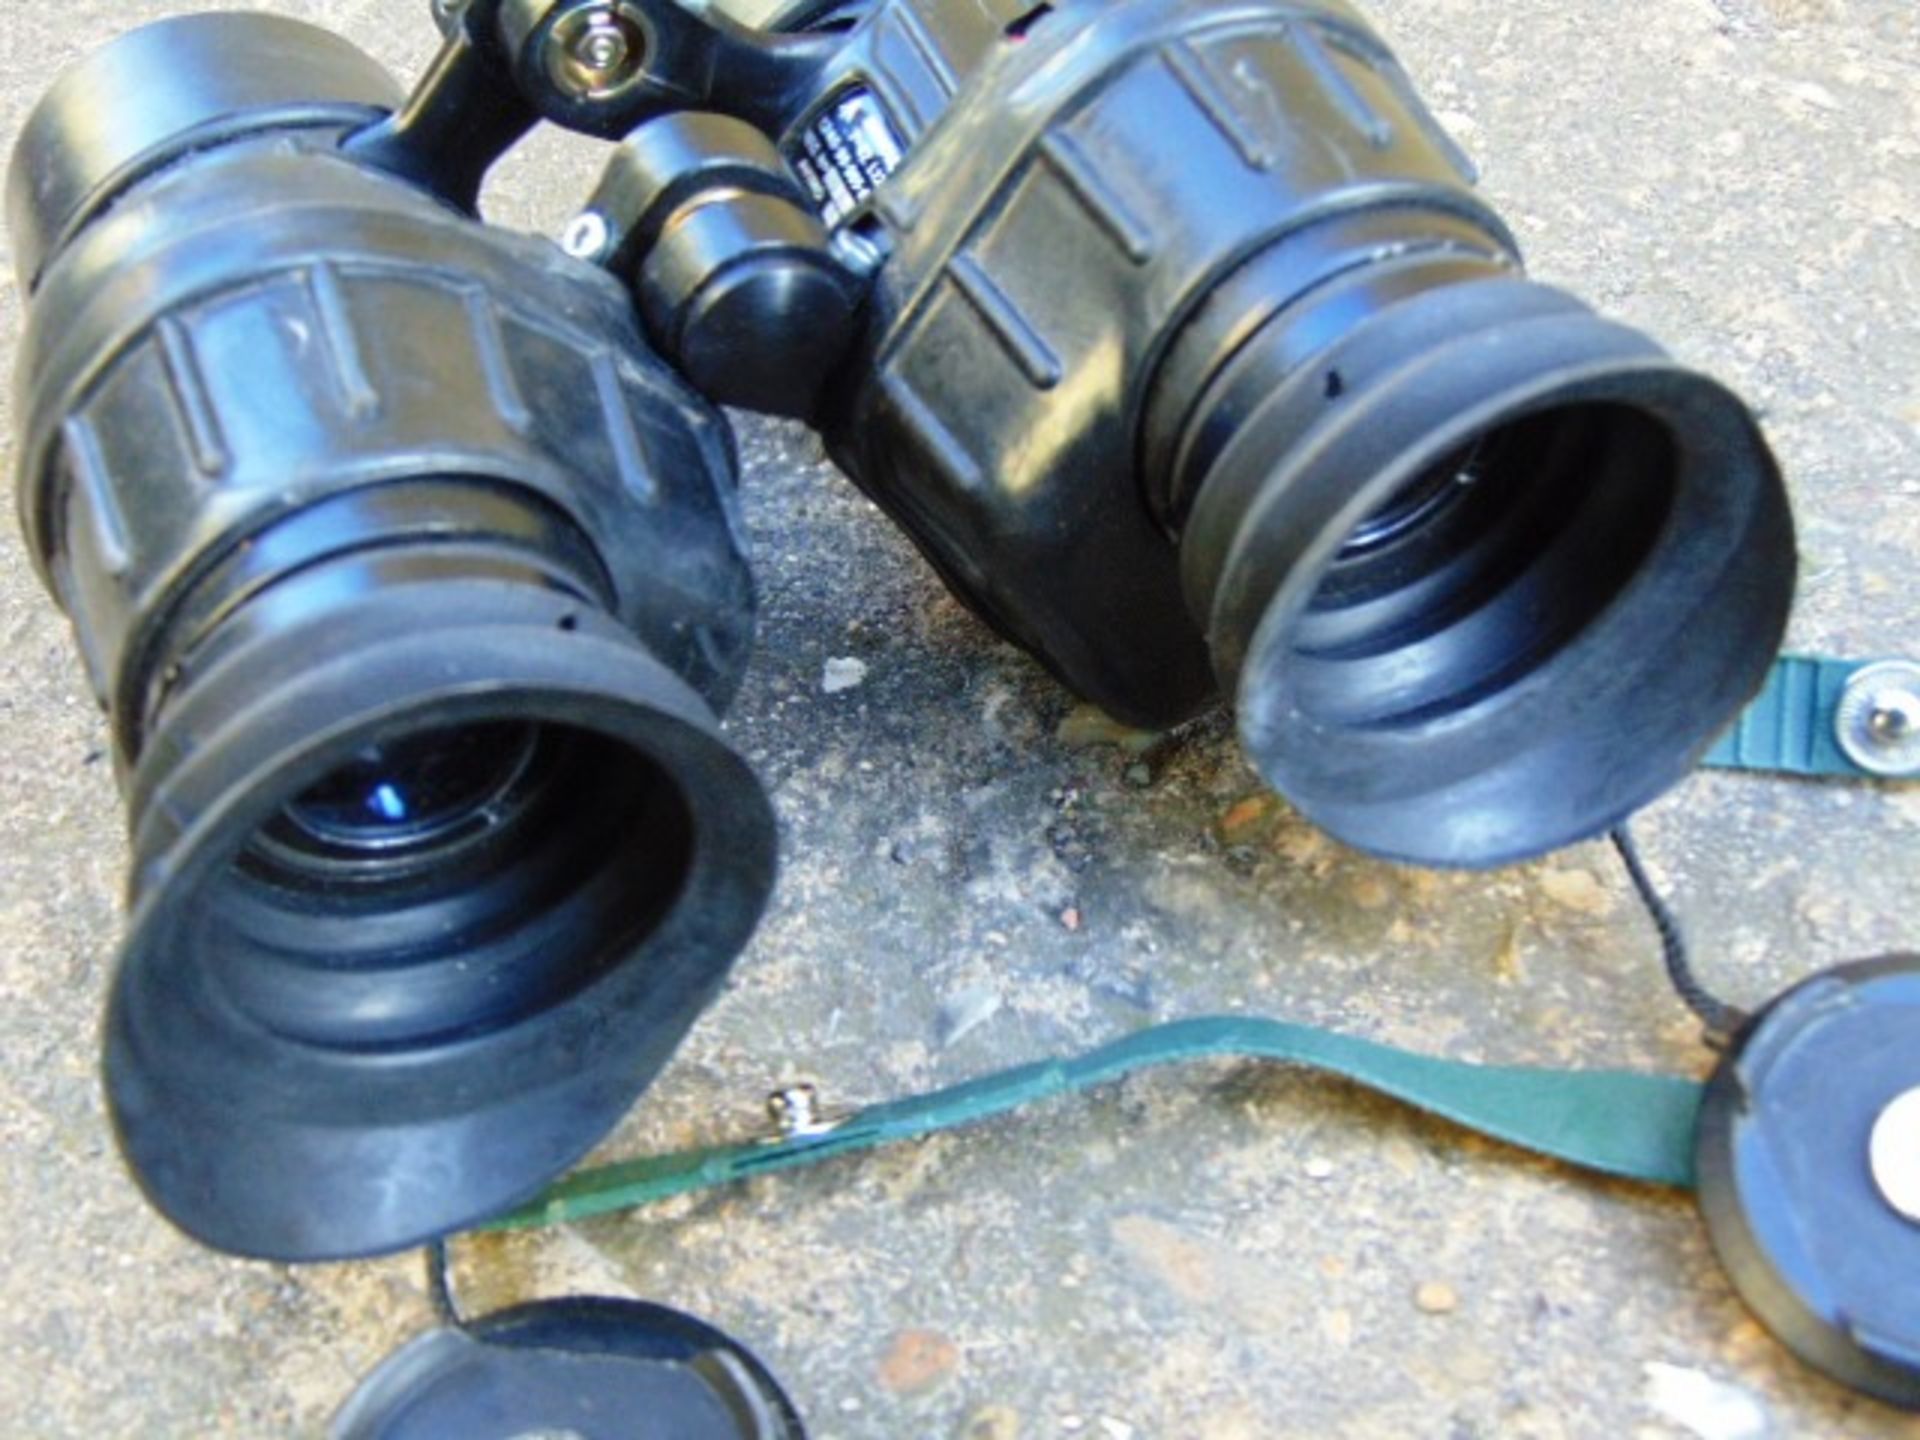 L12A1 Avimo Self Focusing Prism Binoculars - Image 6 of 6